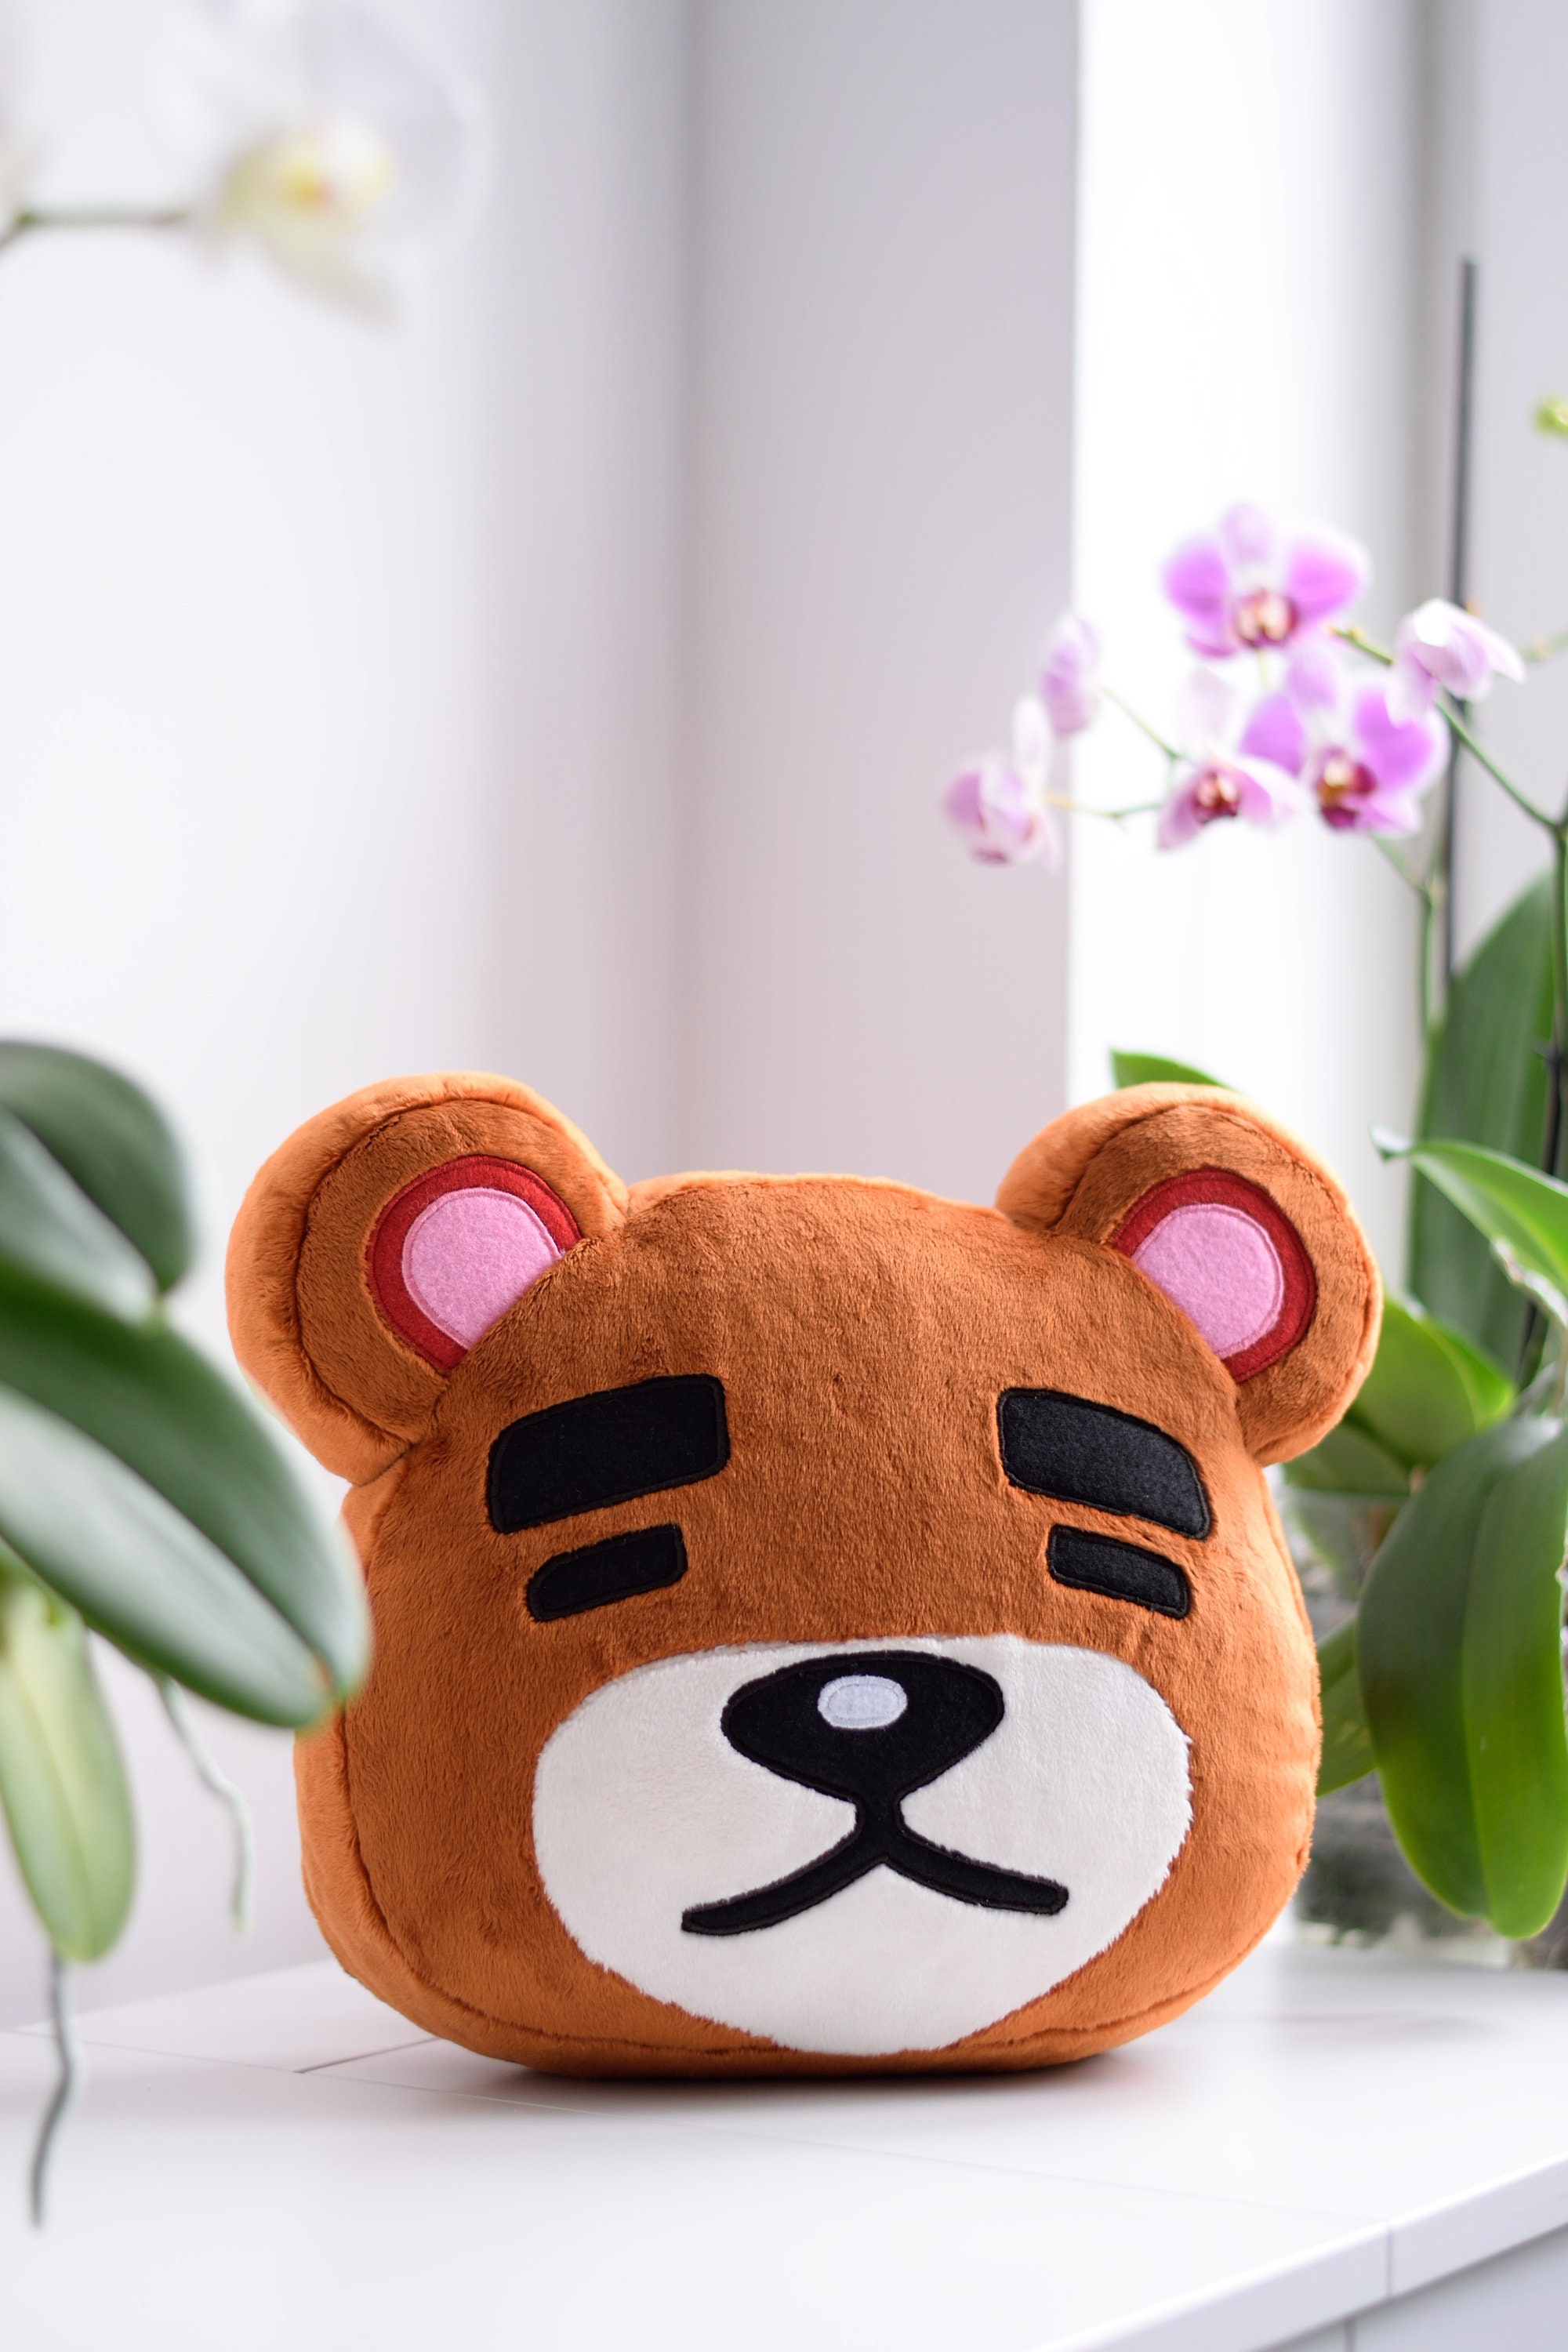 Tøj nødvendighed forpligtelse Teddy Animal Crossing Plush Teddy AC Plush Teddy Animal - Etsy